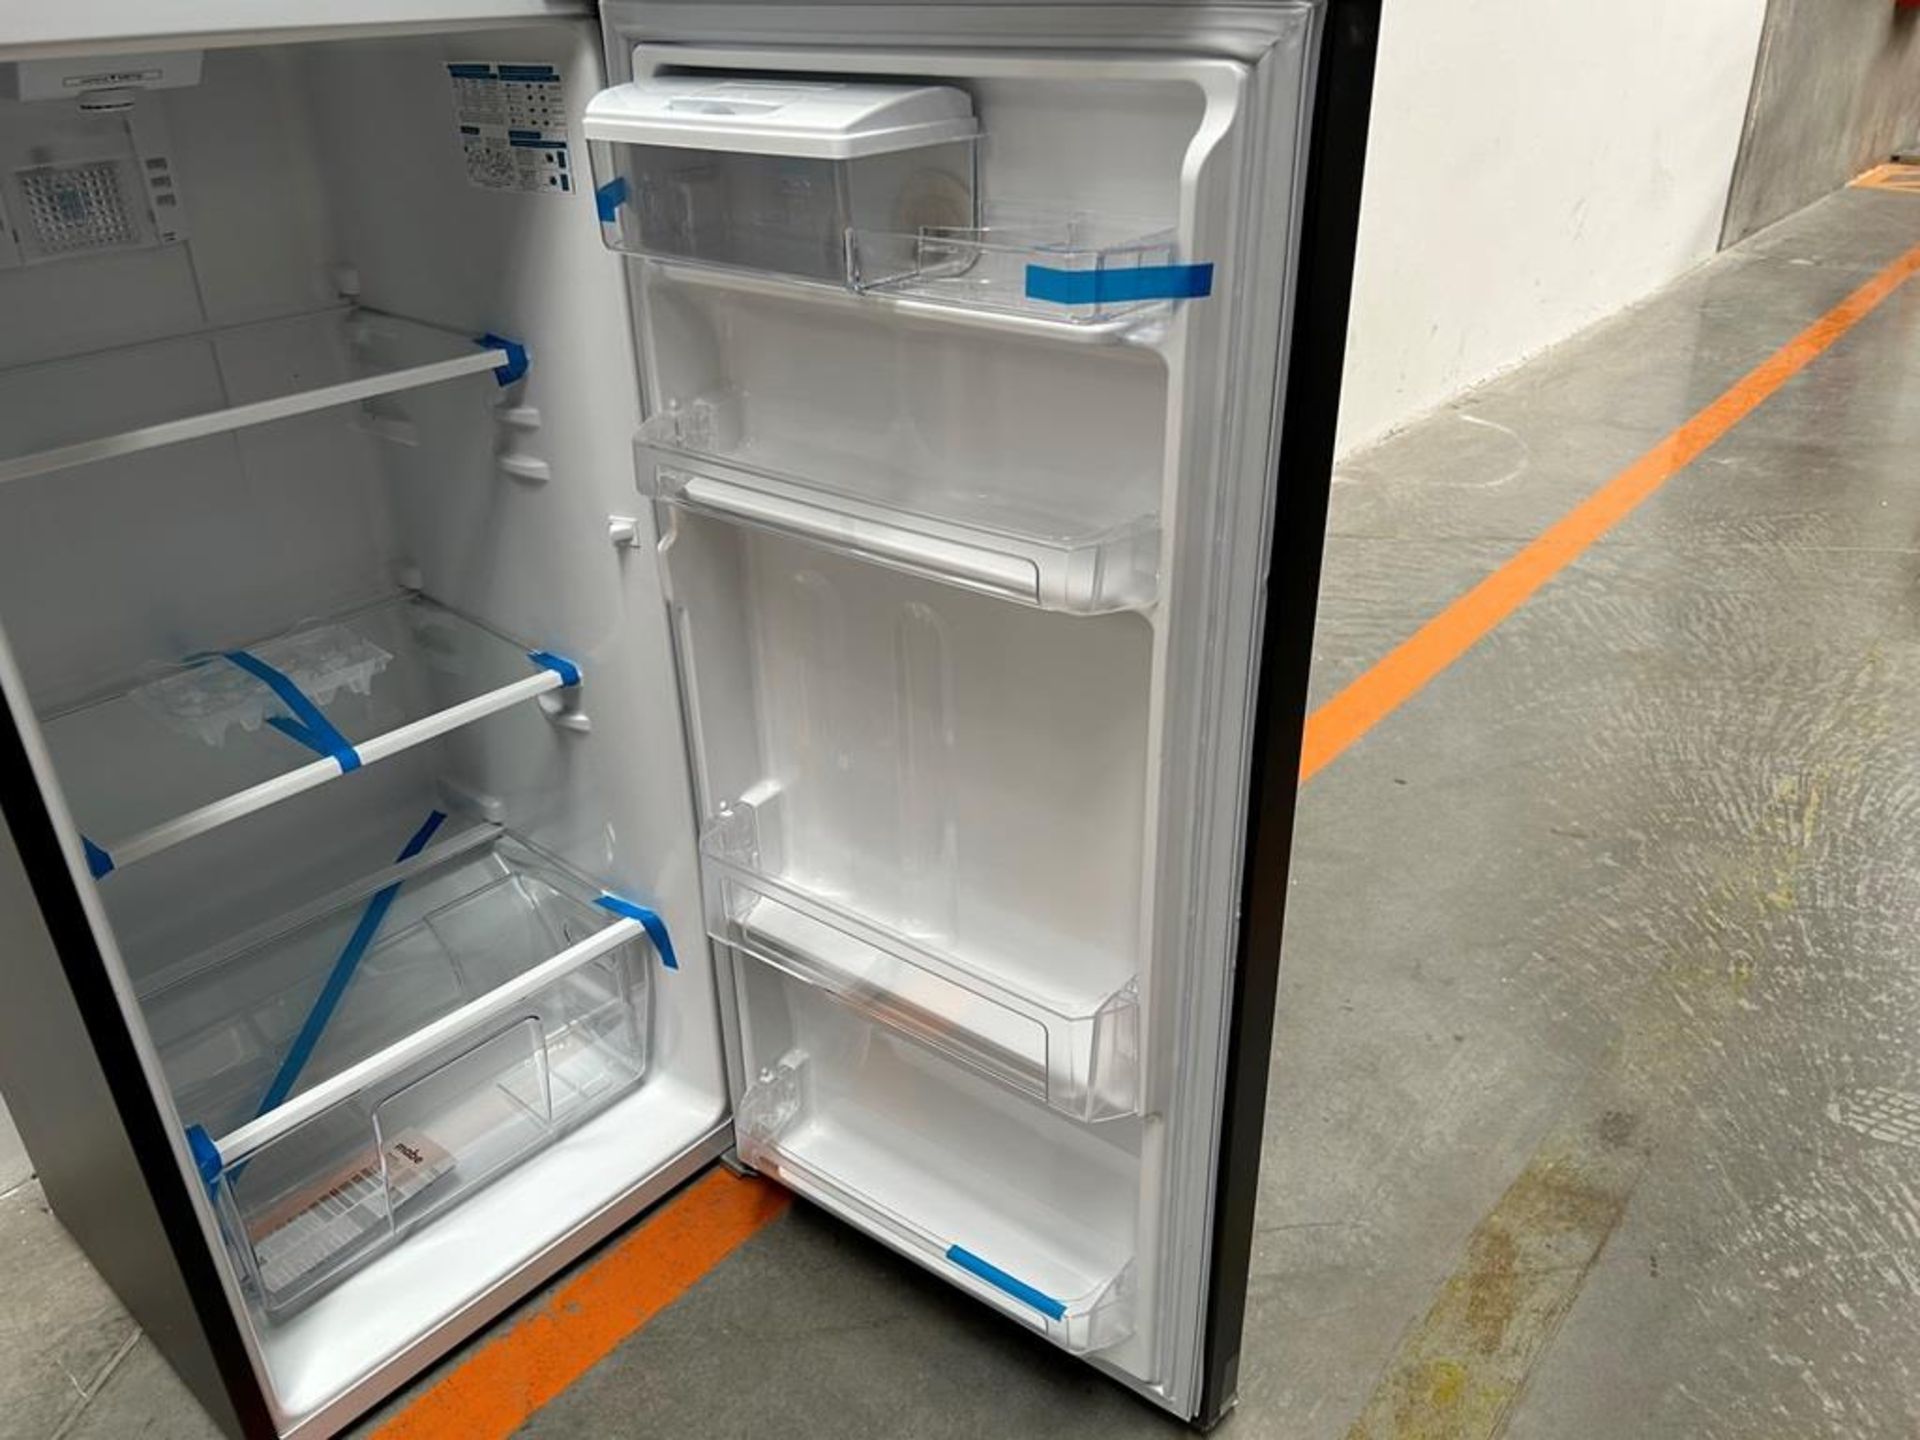 Lote de 2 refrigeradores contiene:1 refrigerador Marca MABE, Modelo RMS400IVMRMA, Serie 03009, Colo - Image 14 of 18